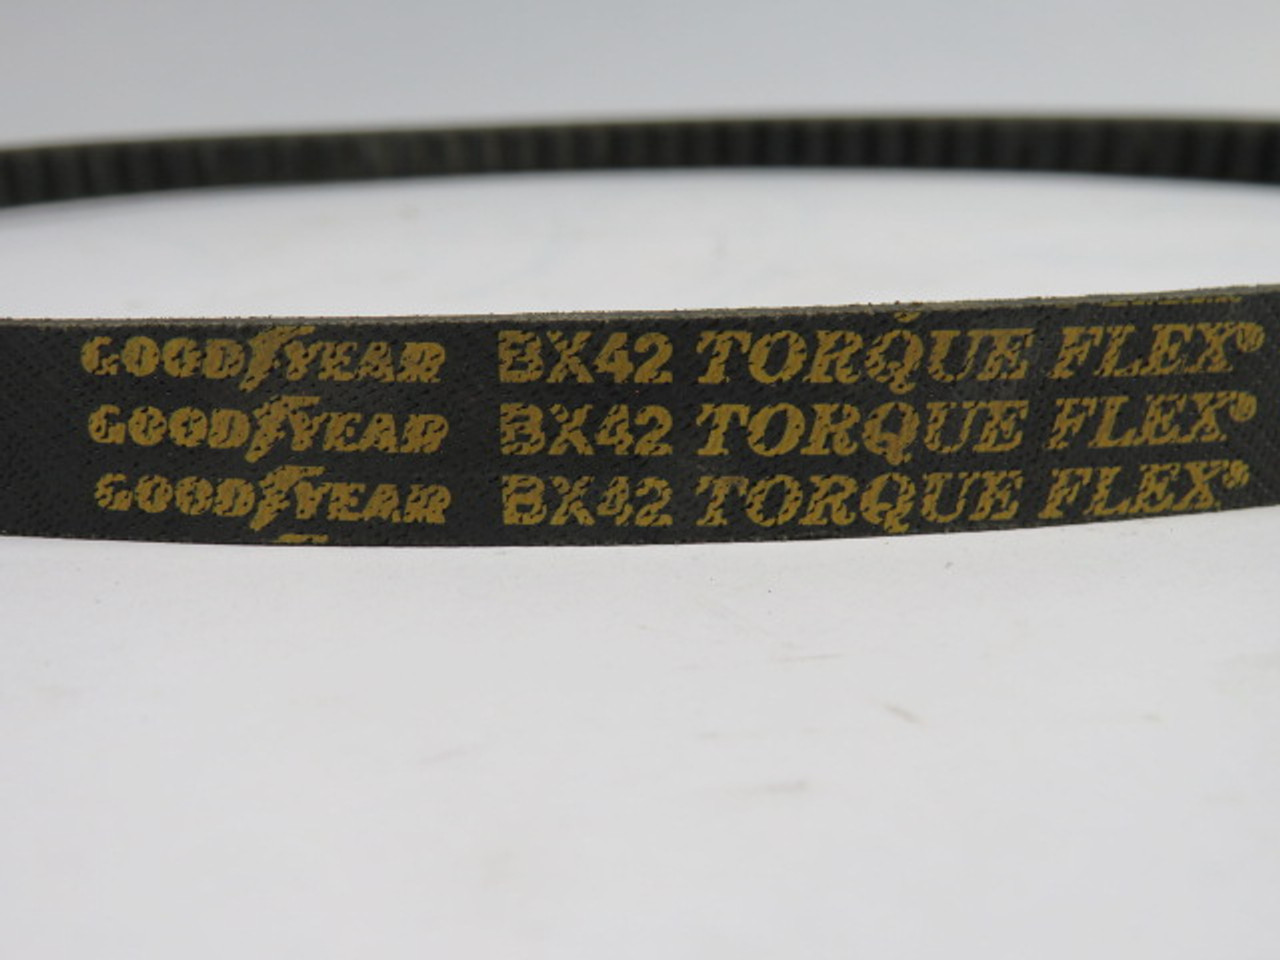 Goodyear BX42 Torque Flex Belt 45" OC 0.66" Width NOP